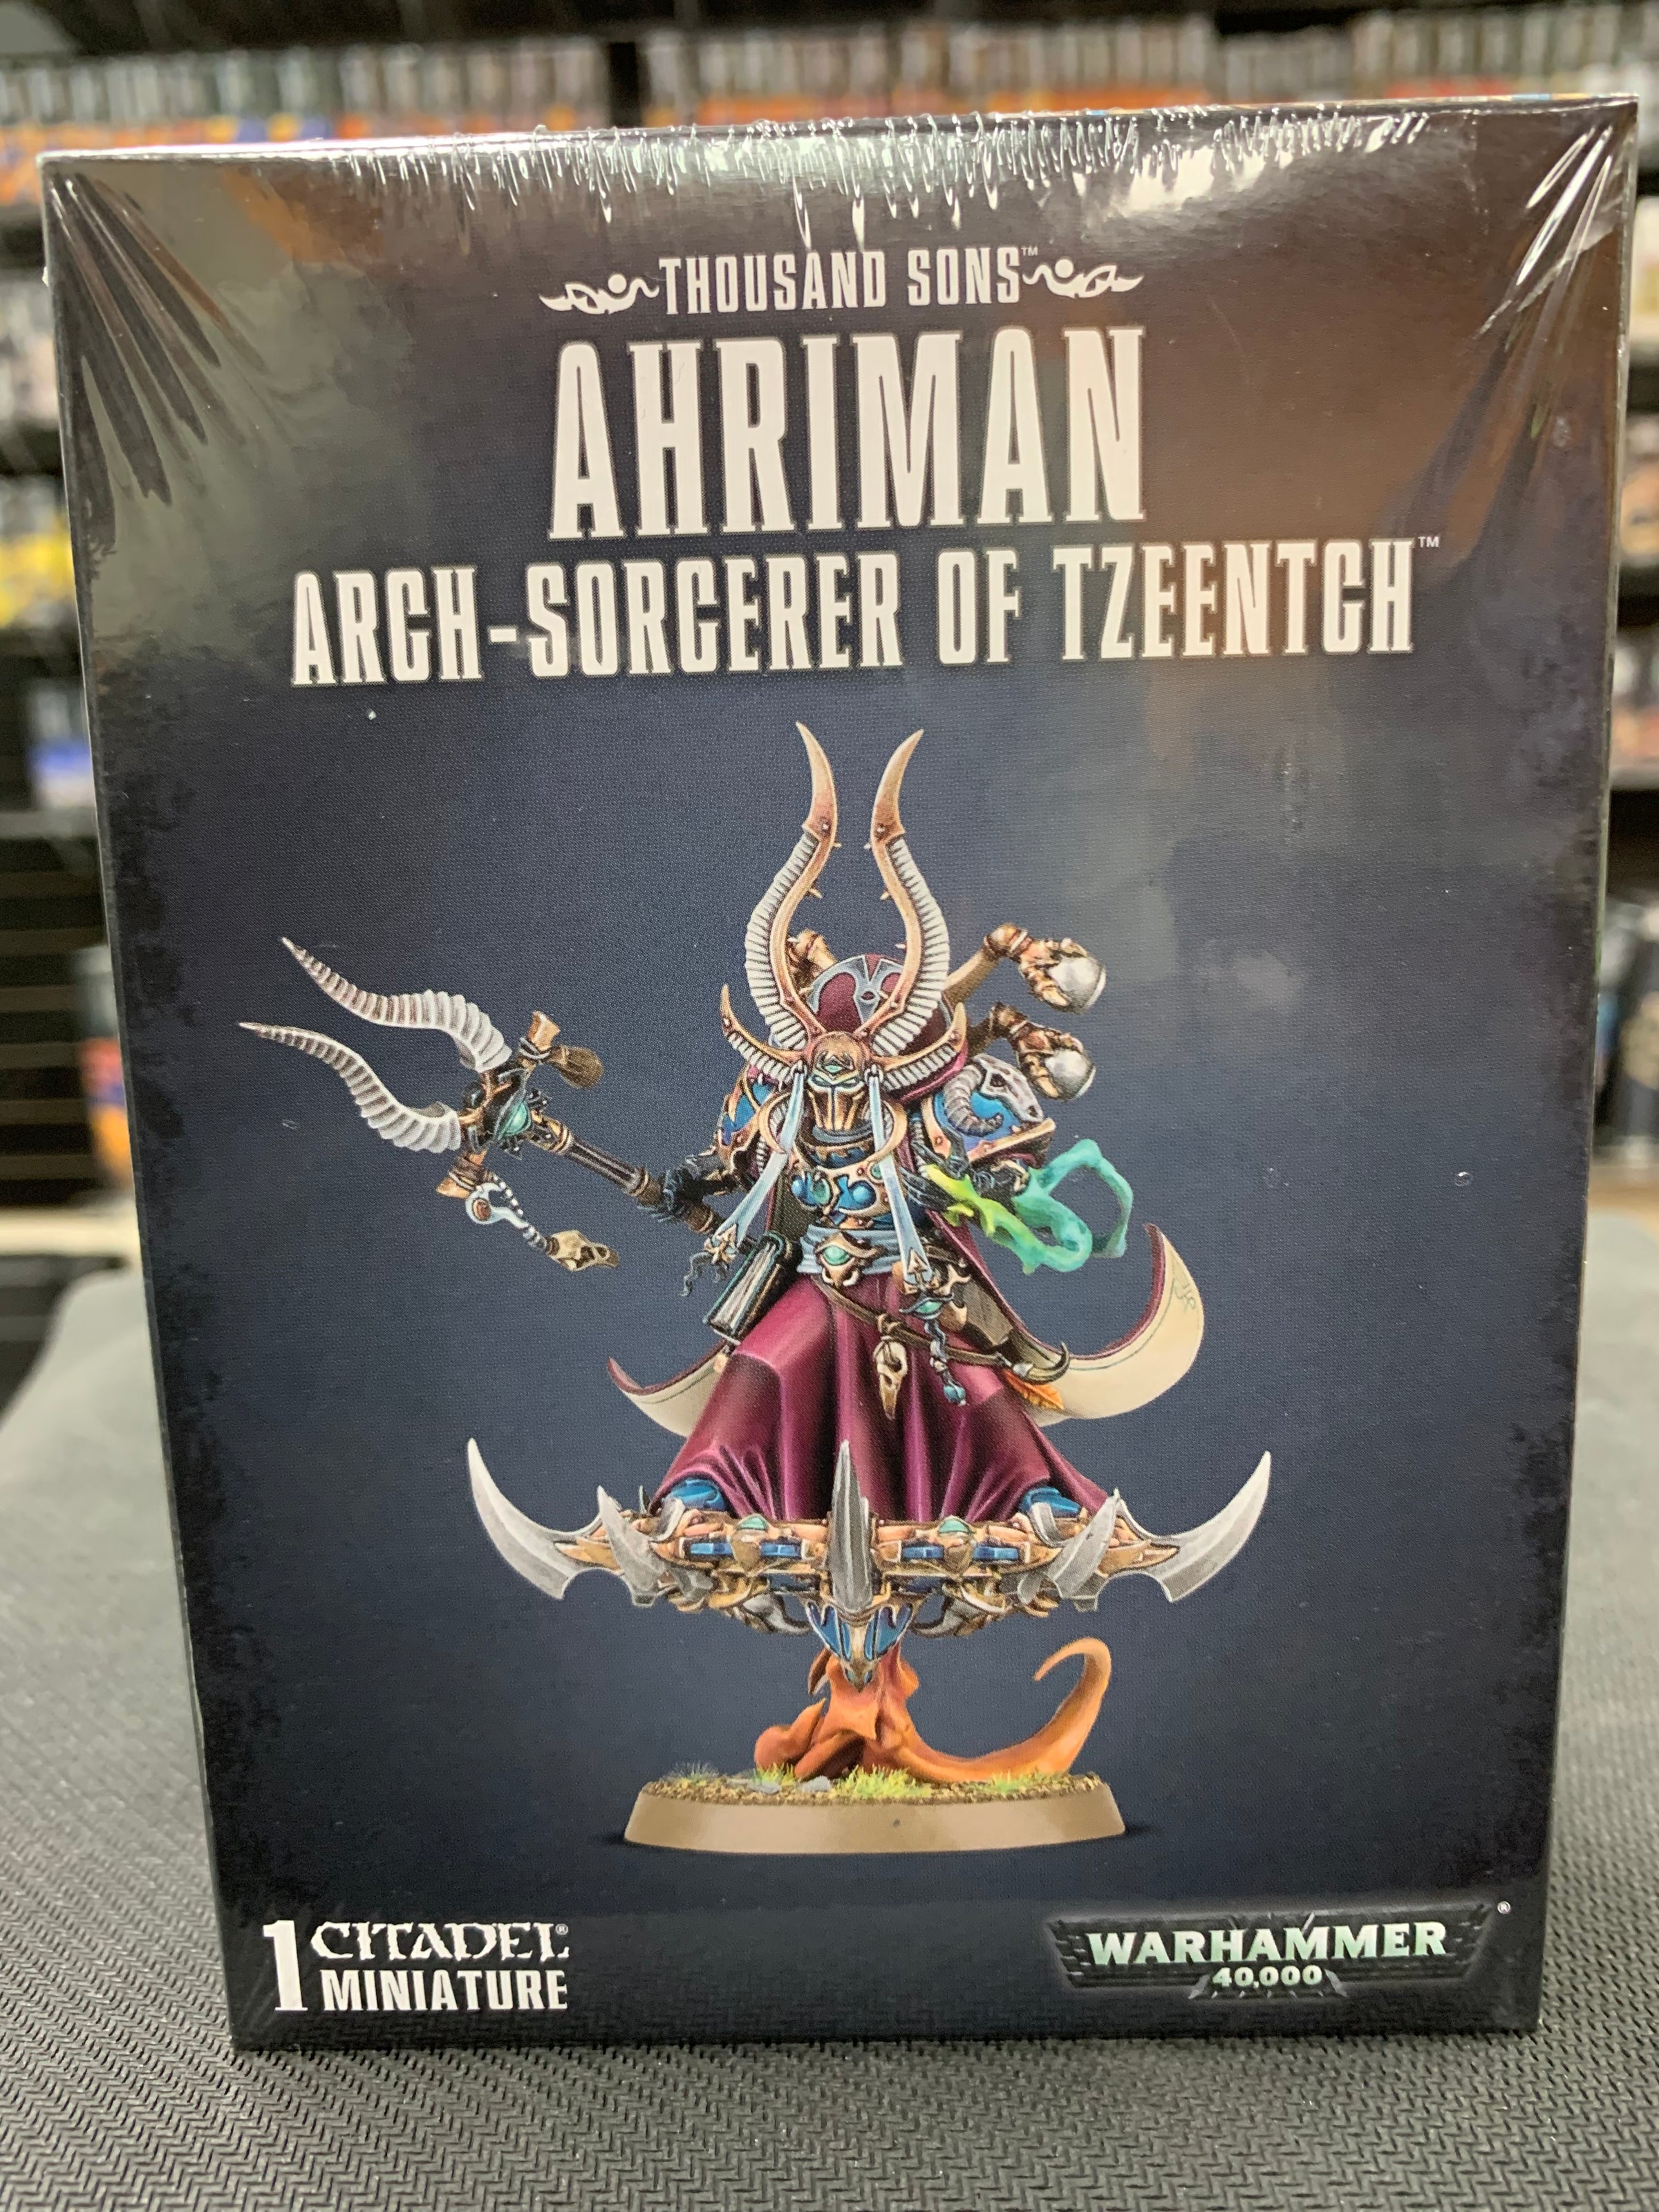 Thousand Sons Ahriman Arch-Sorcerer of Tzeentch Warhammer 40,000